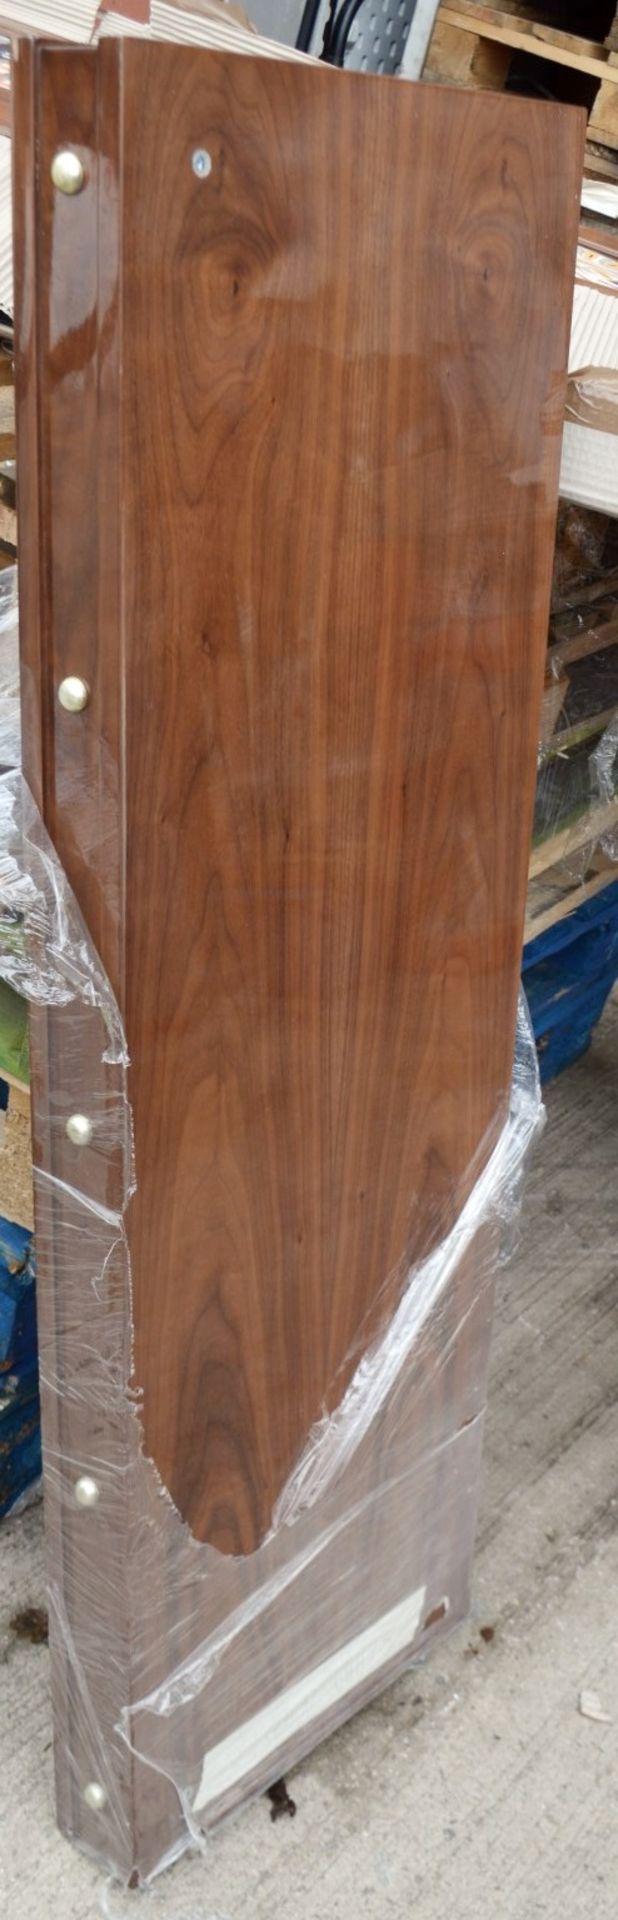 1 x JUSTIN VAN BREDA 'Grace' 2.5 Metre 4-Door Dresser With Inlaid Artwork - Original Price £6,359 - Image 8 of 18